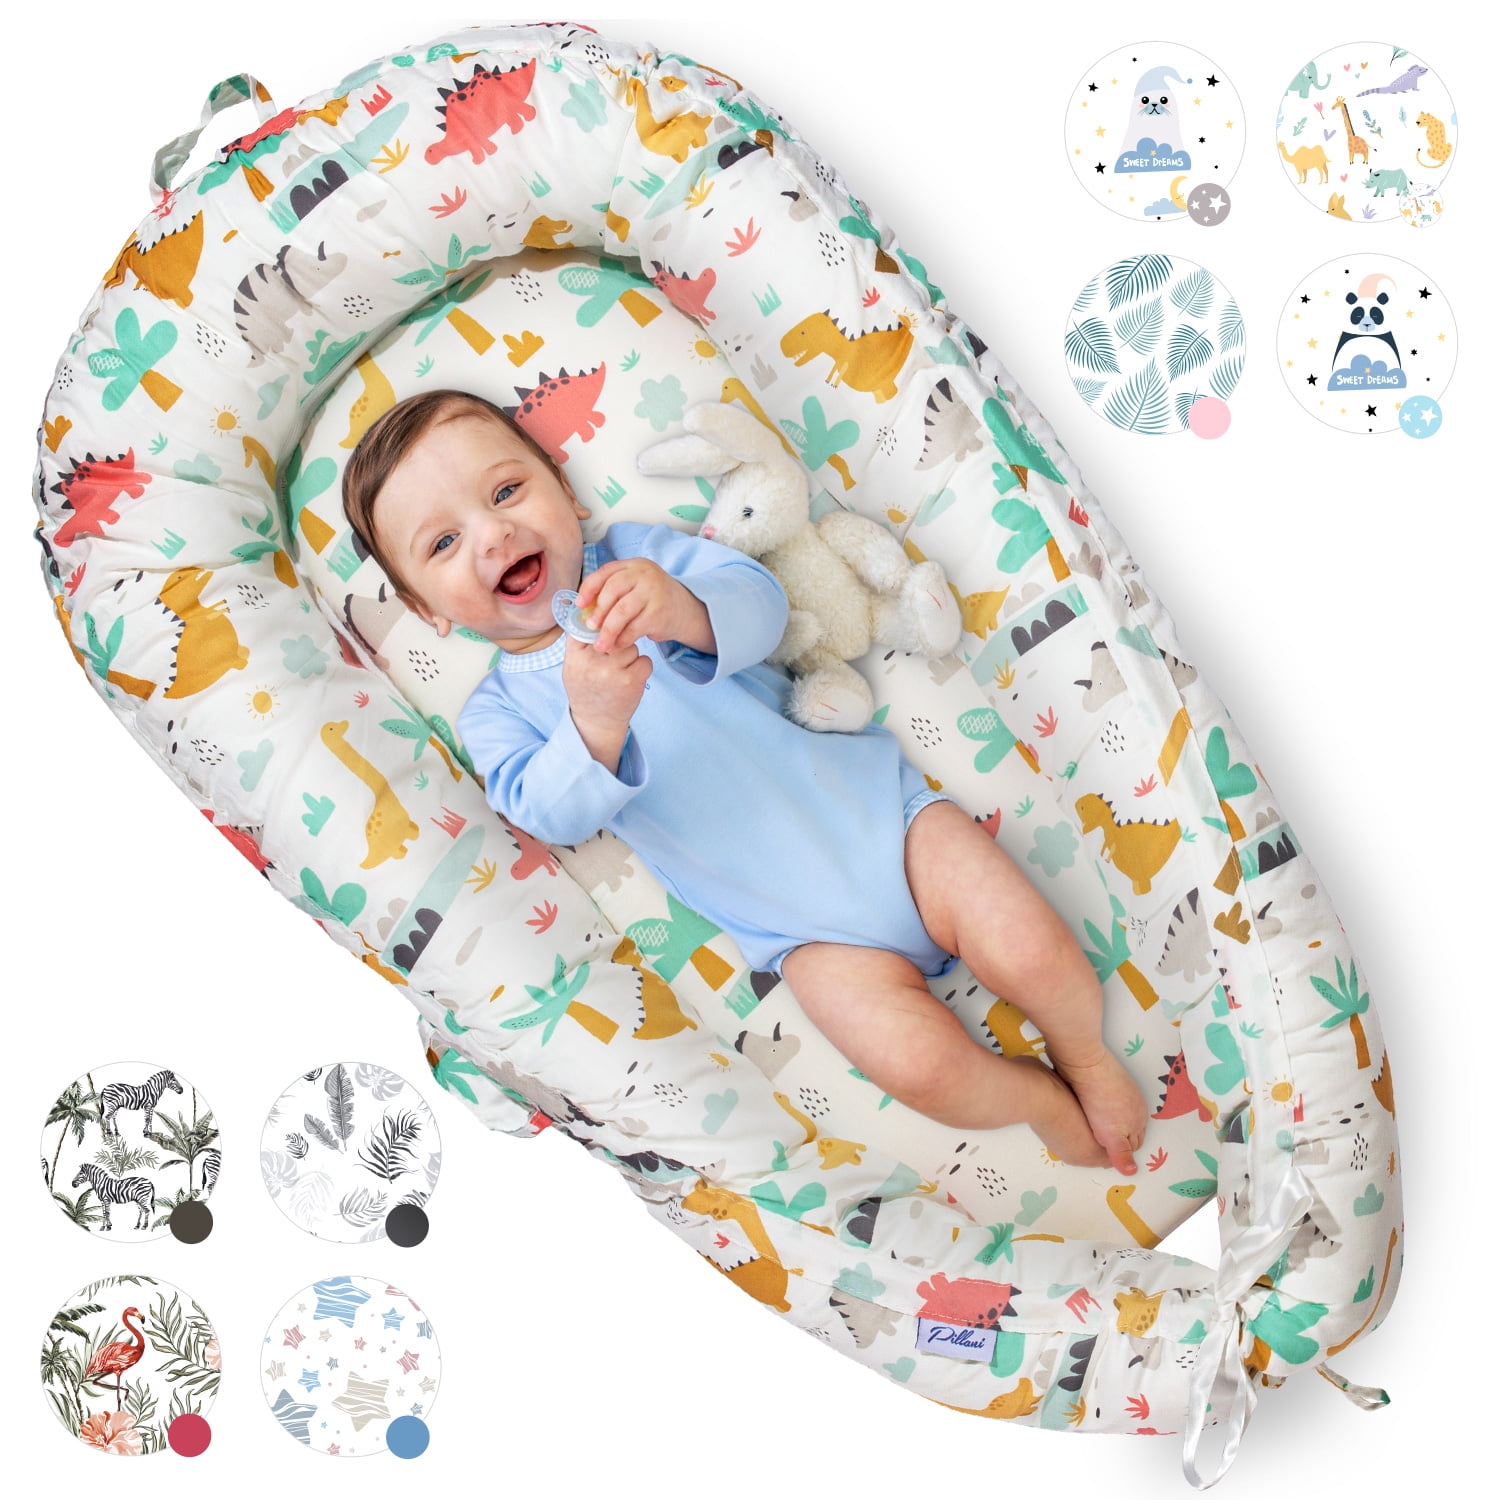 Chiviri4ta - BOPPY NEWBORN LOUNGER Almohada para que el bebé tenga un  espacio cómodo para reposar o jugar con mamá, no se recomienda su uso para  dormir. Diseñada para bebés de hasta